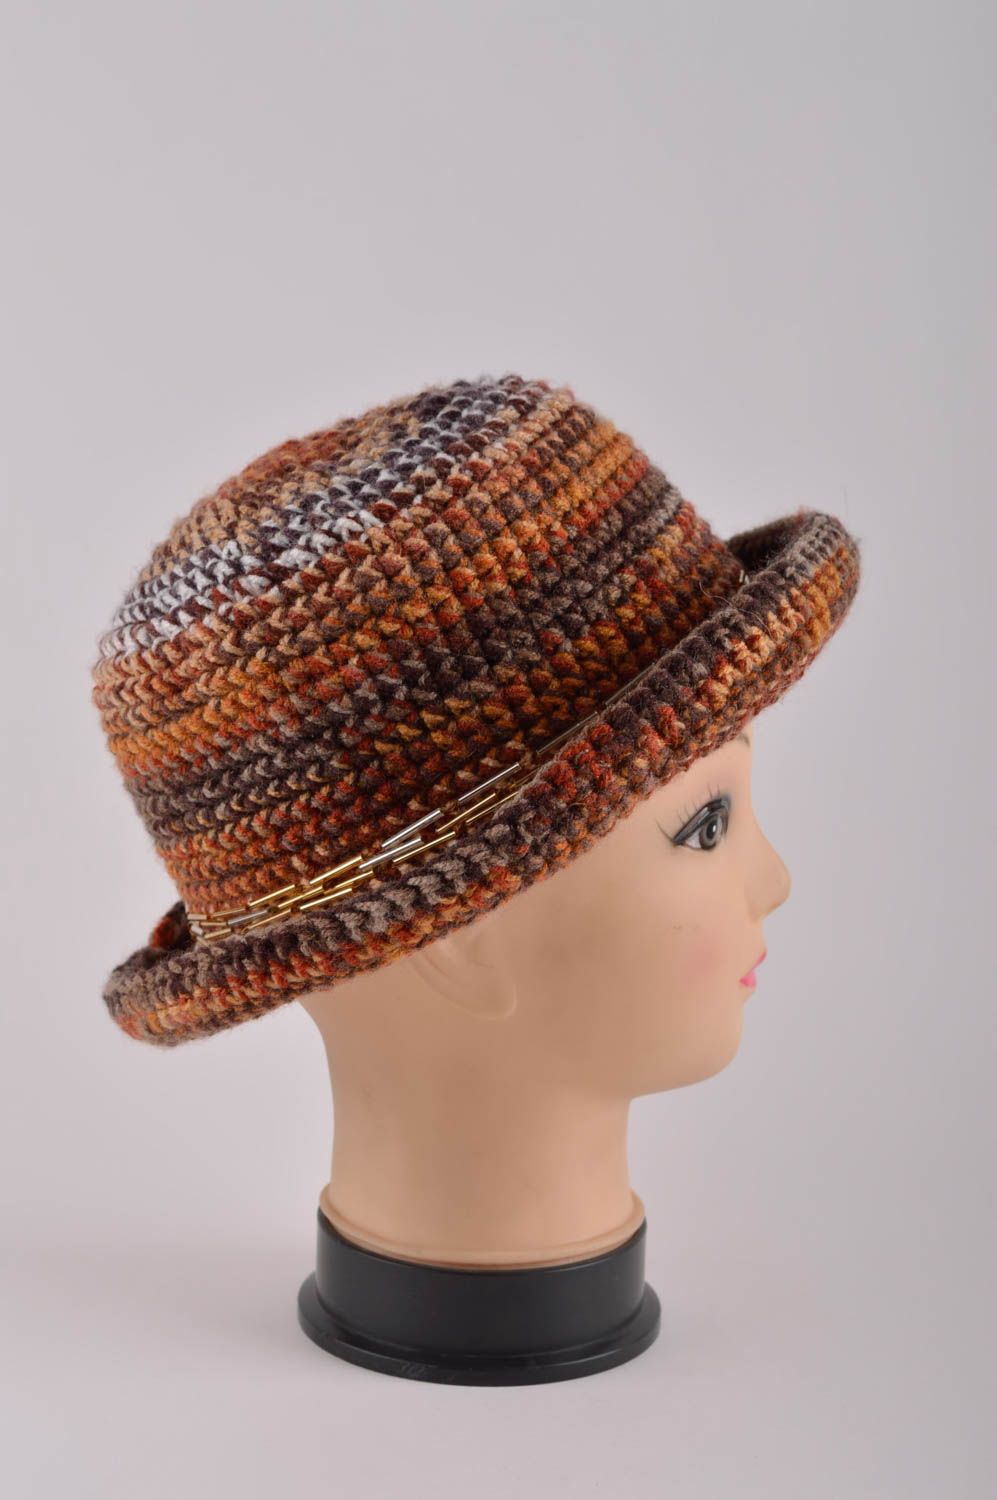 Handmade gehäkelter Hut Damen Accessoire ausgefallener Hut für Winter stilvoll foto 4